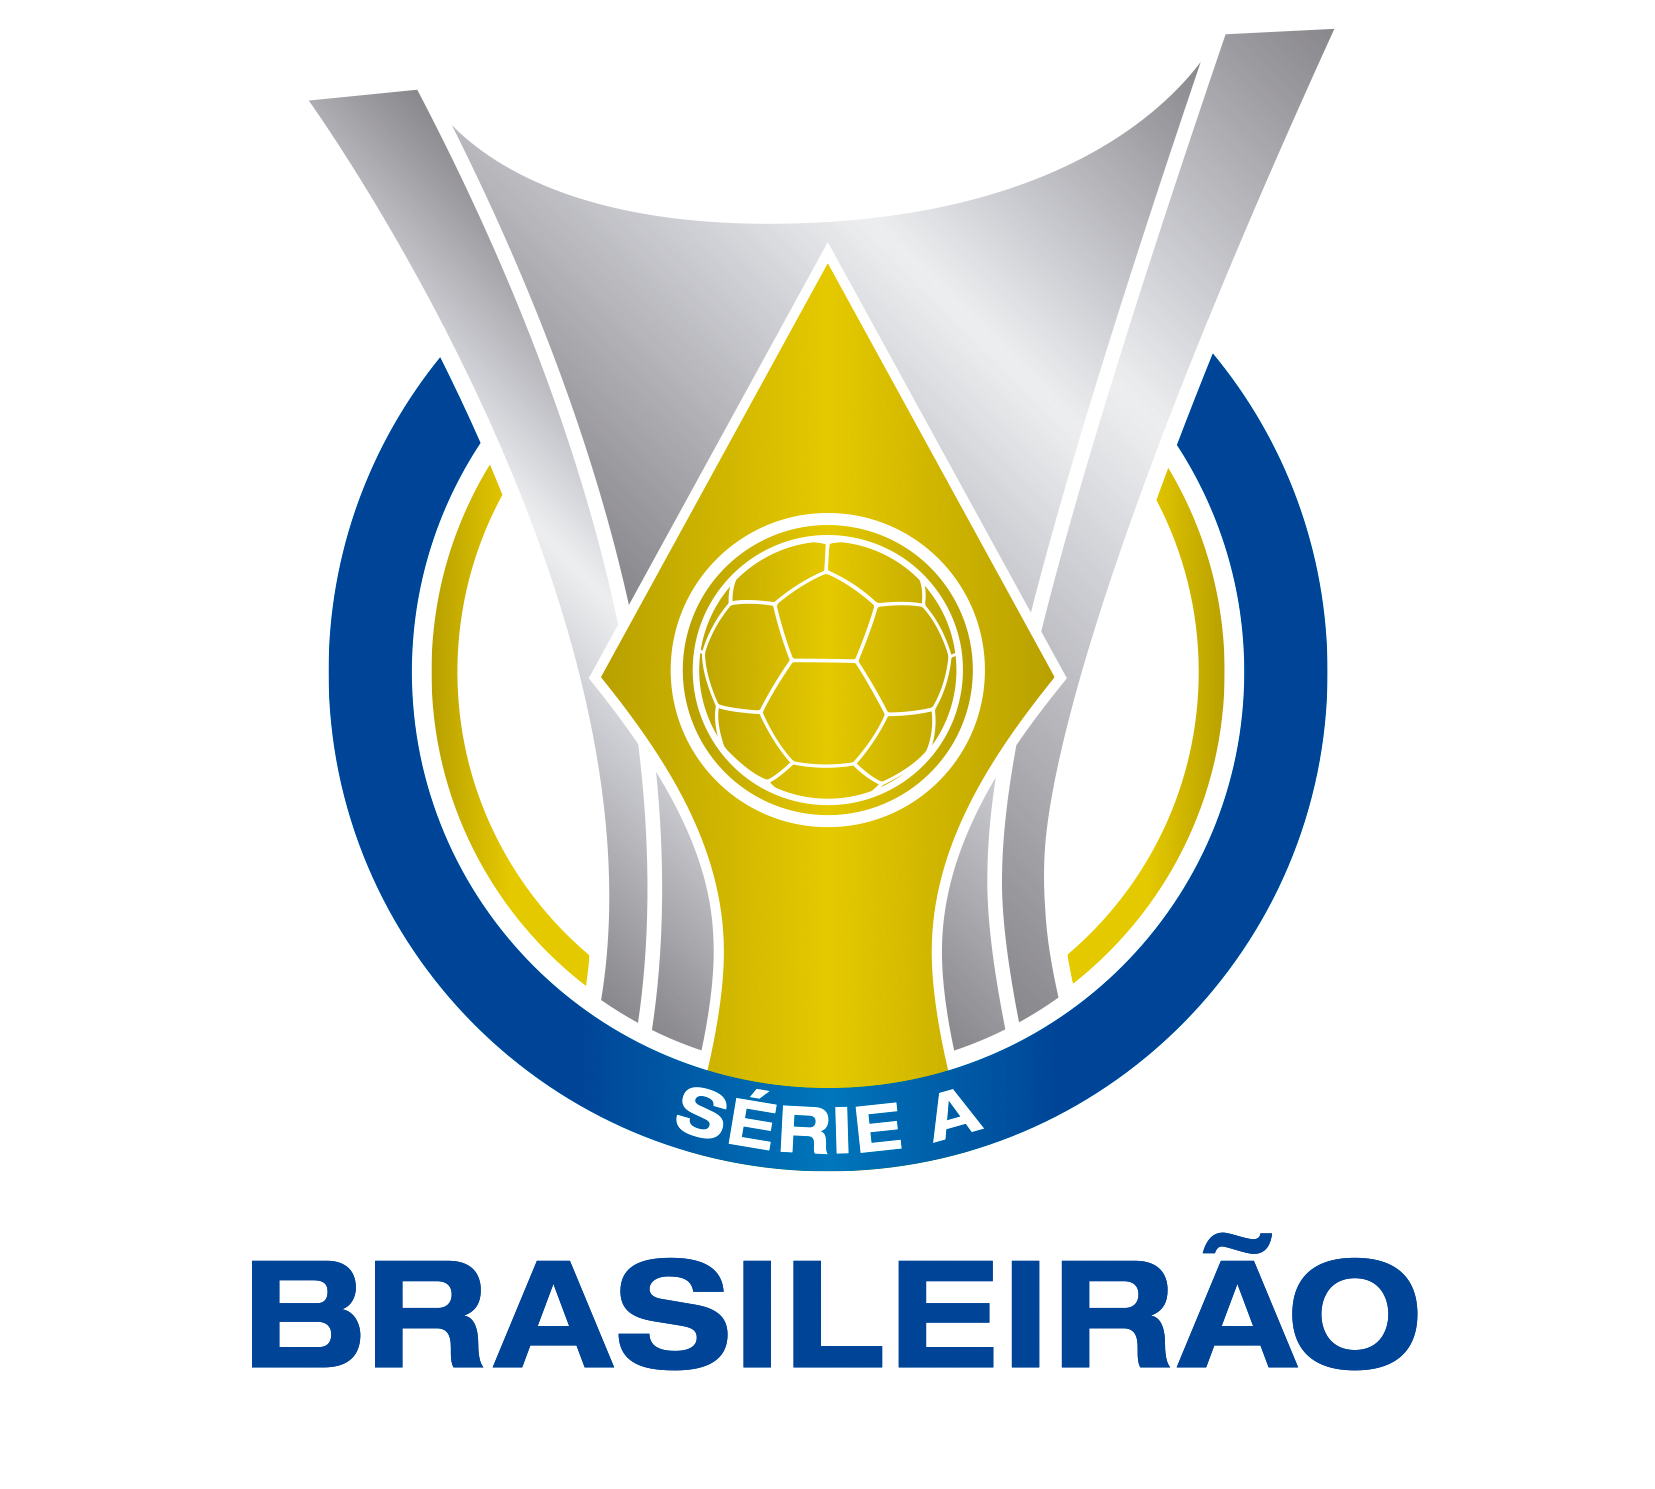 Campeonato Brasileiro Série A, FIFA Football Gaming wiki